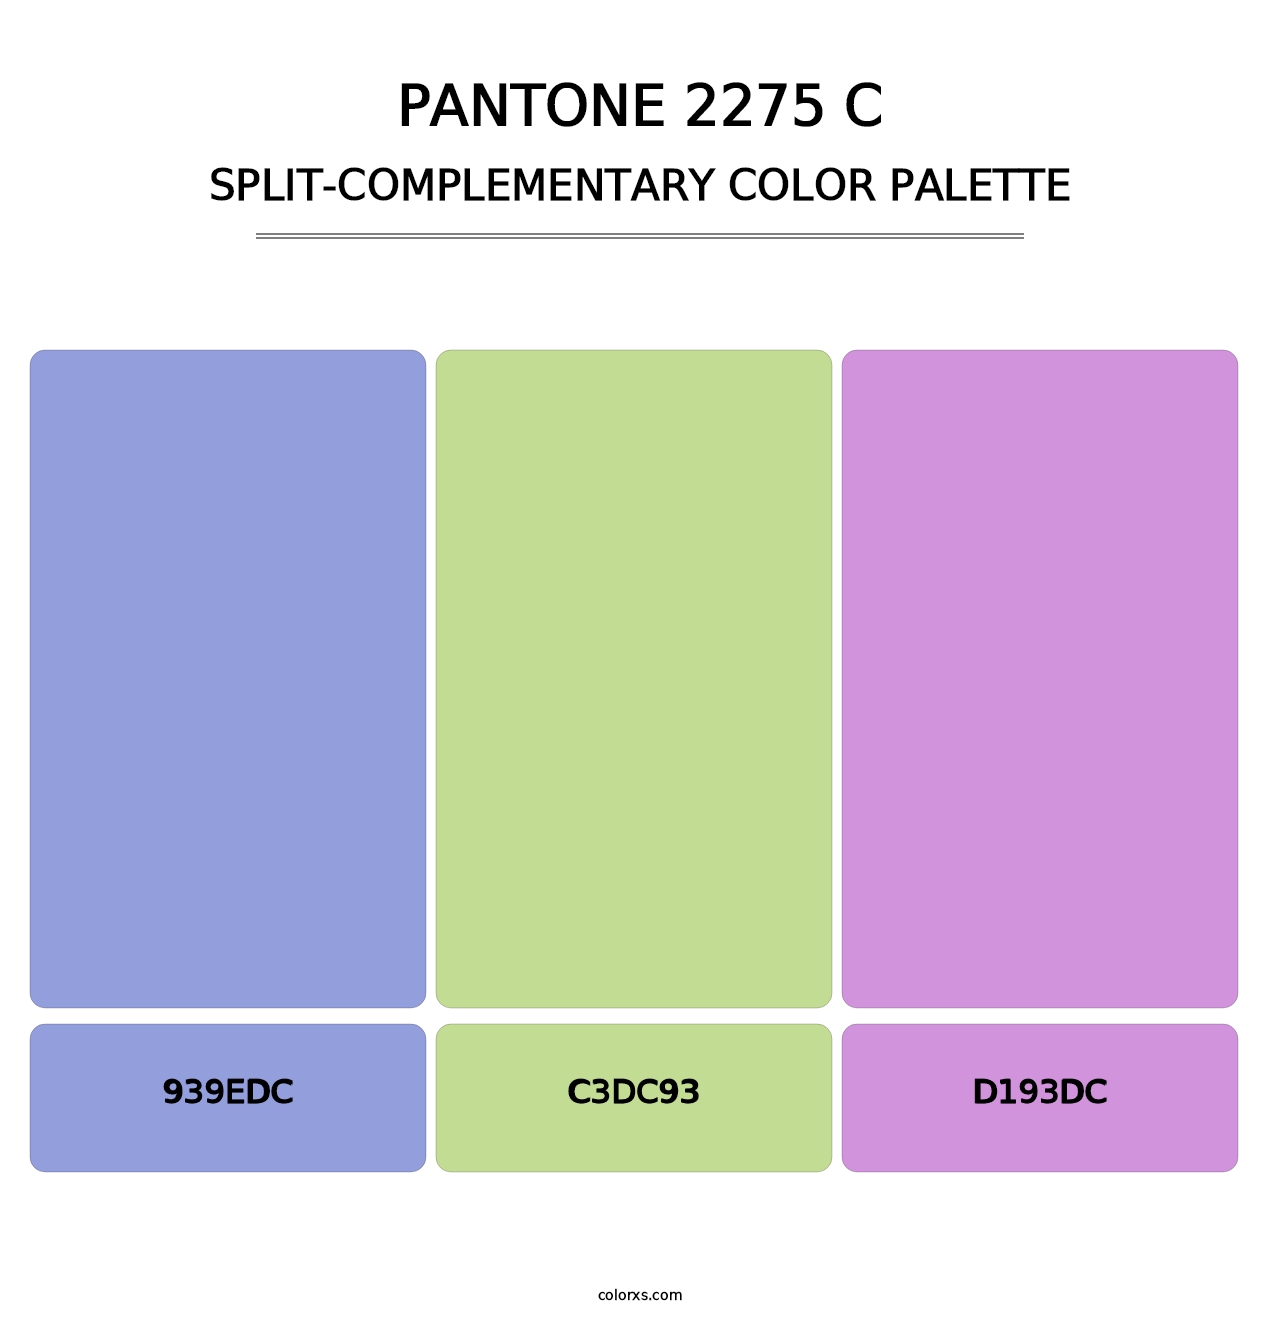 PANTONE 2275 C - Split-Complementary Color Palette